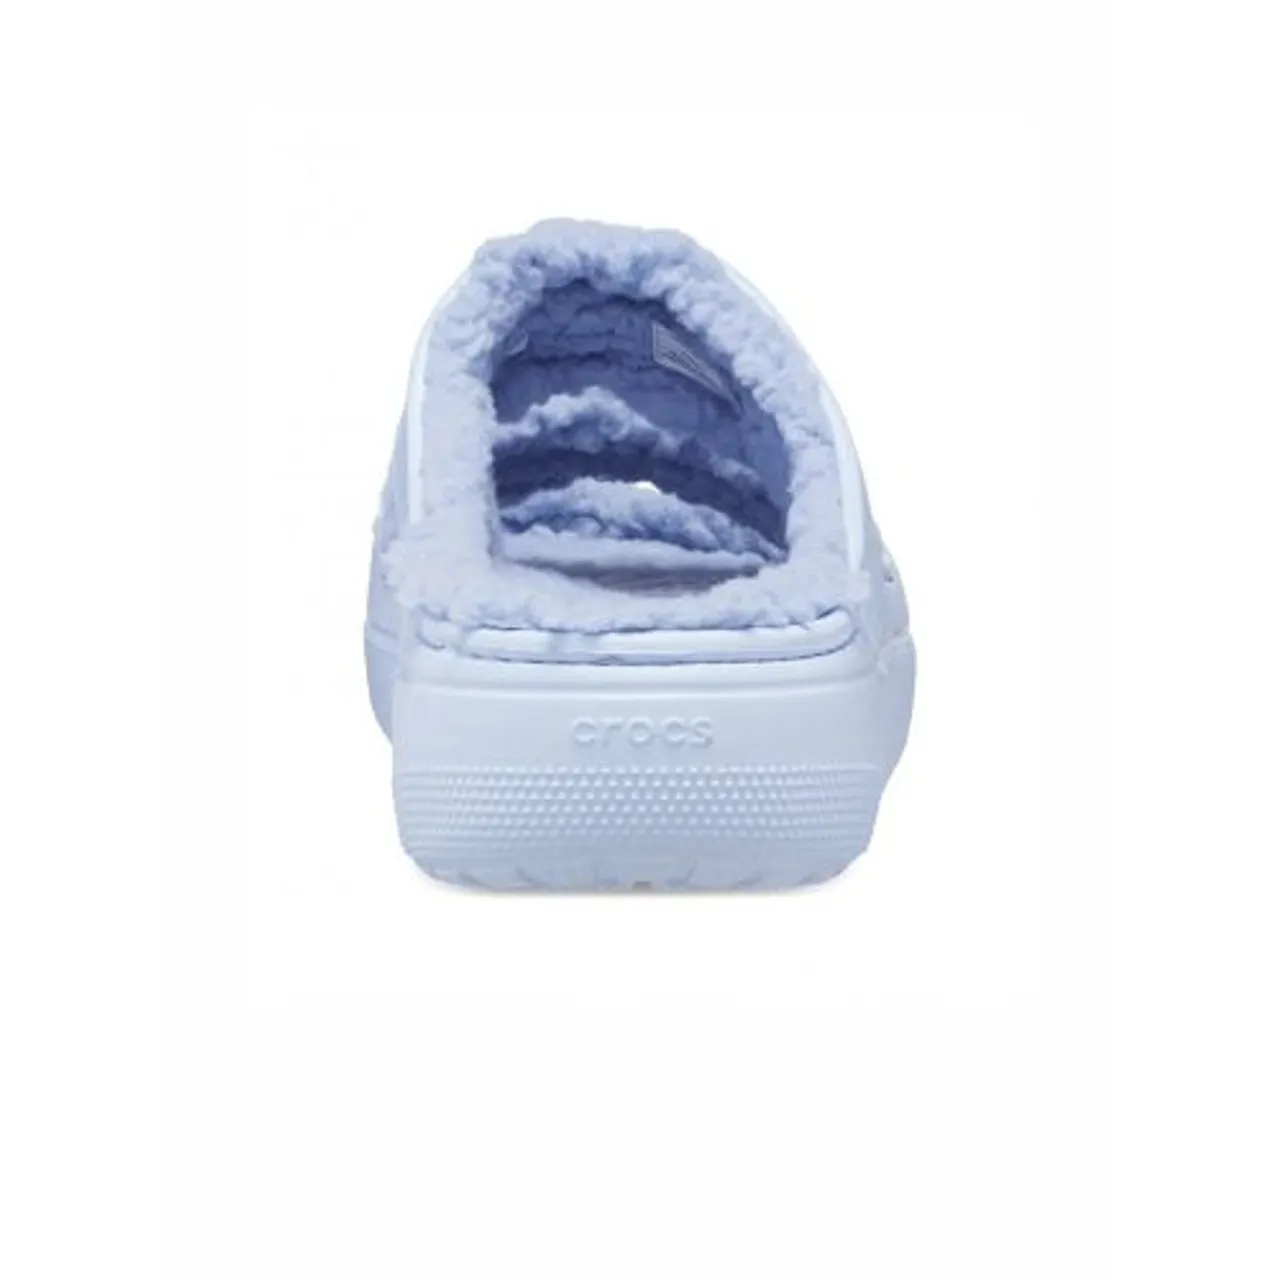 Crocs Womens Blue Calcite Classic Cozzzy Sandal